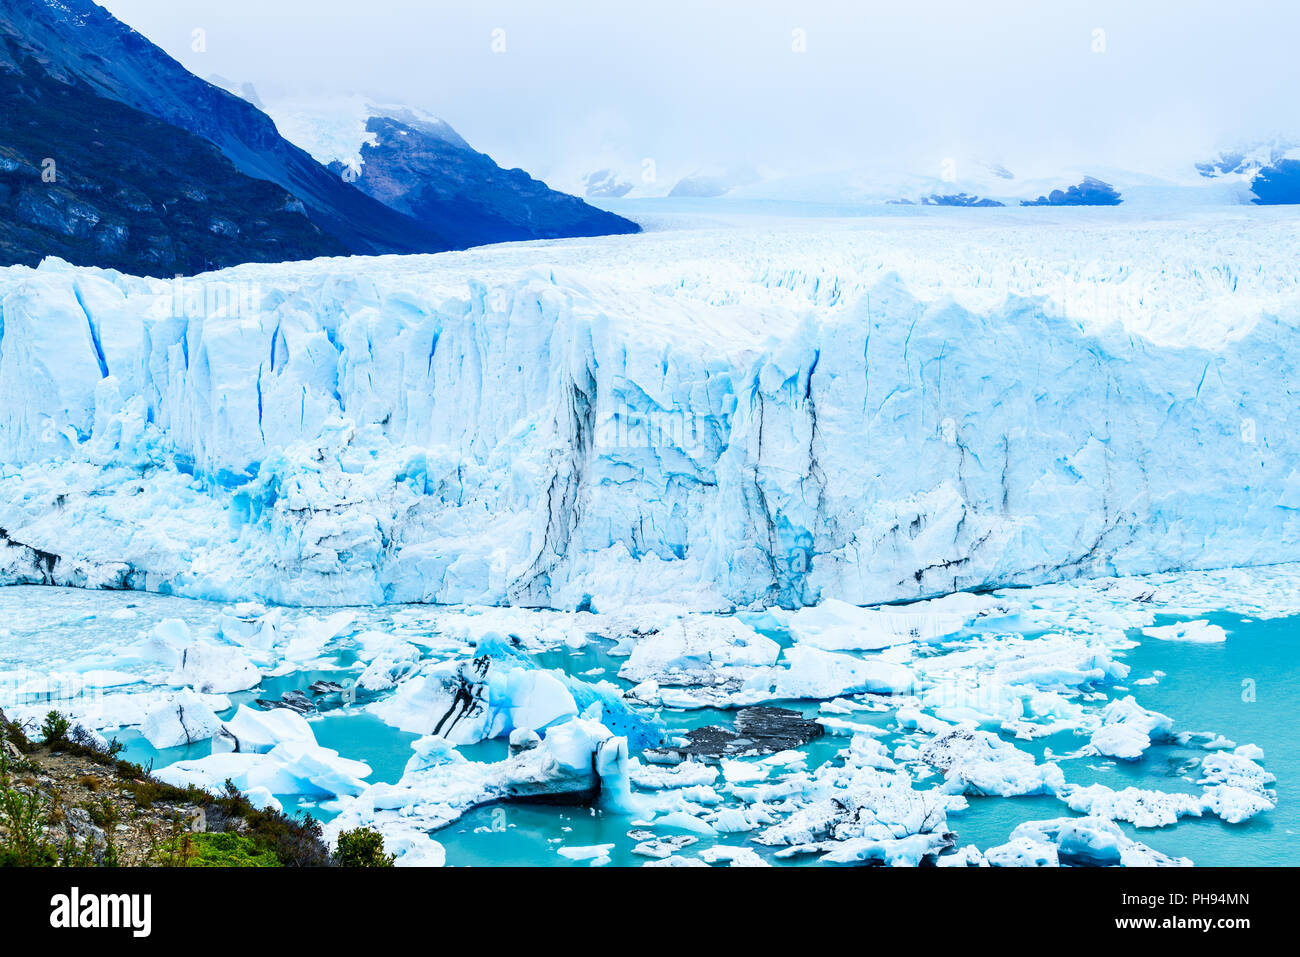 View of Perito Moreno Glacier at Argentino lake Stock Photo